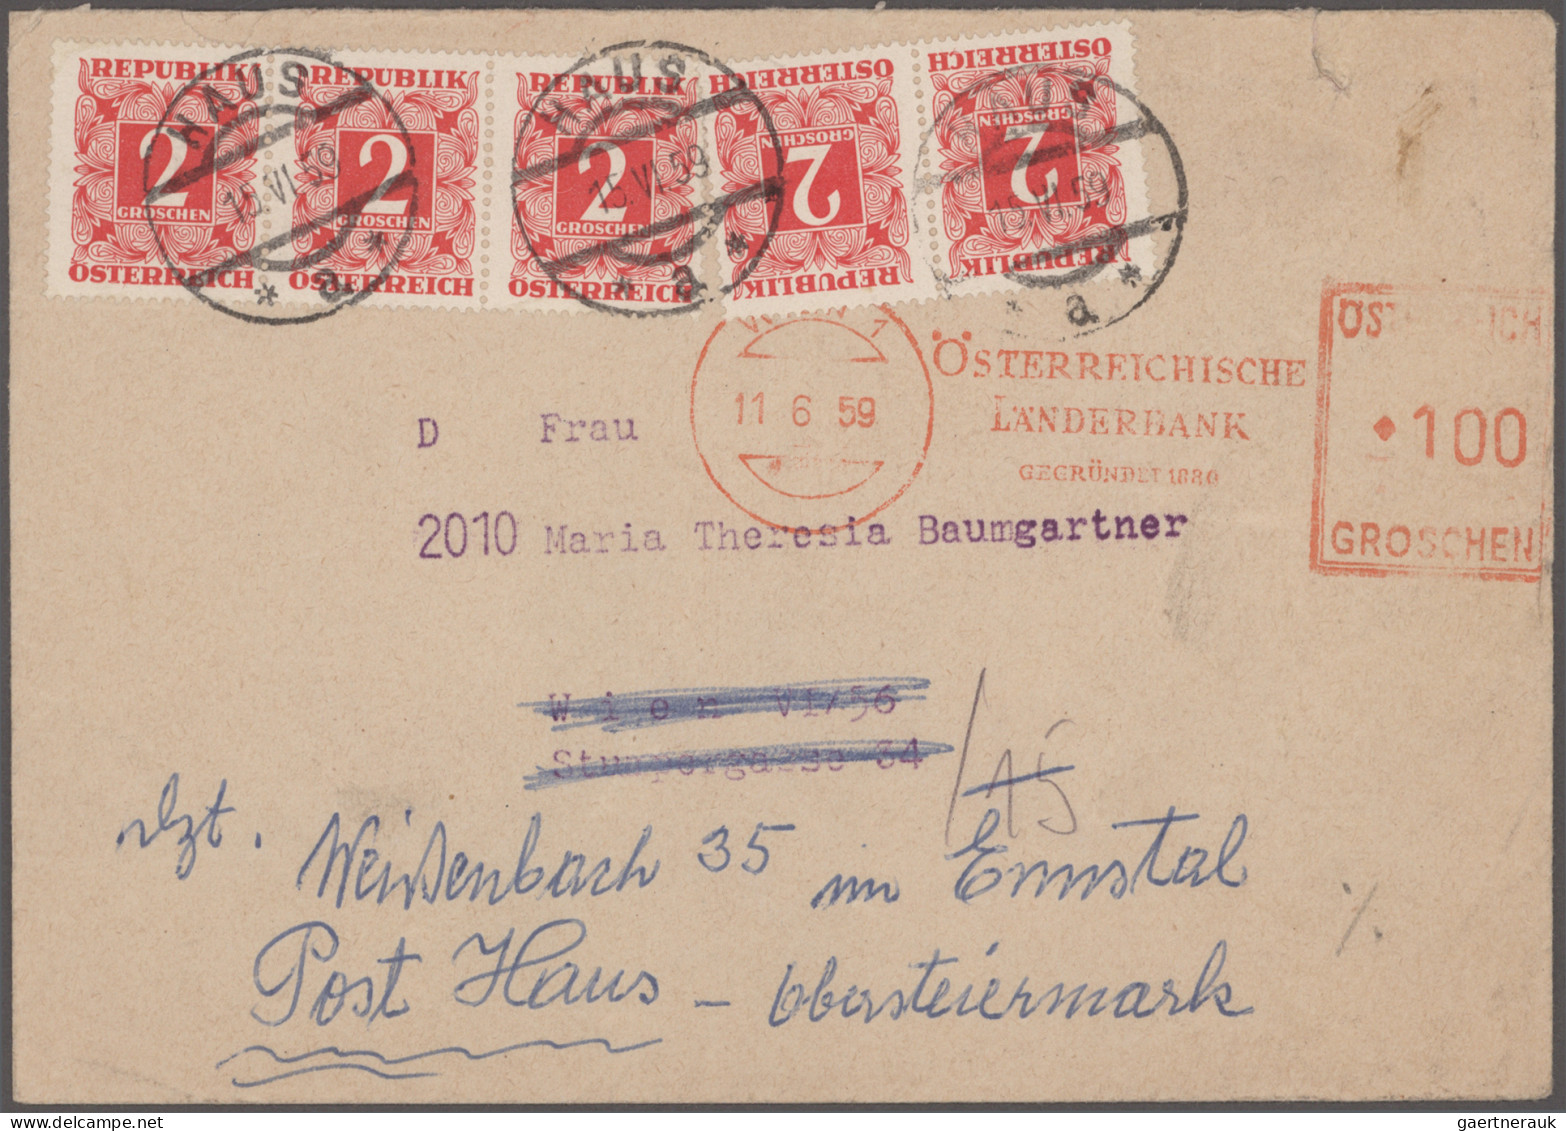 Österreich: 1850/1970 (ca.), guter Posten von ca. 310 Briefen und Karten in nett